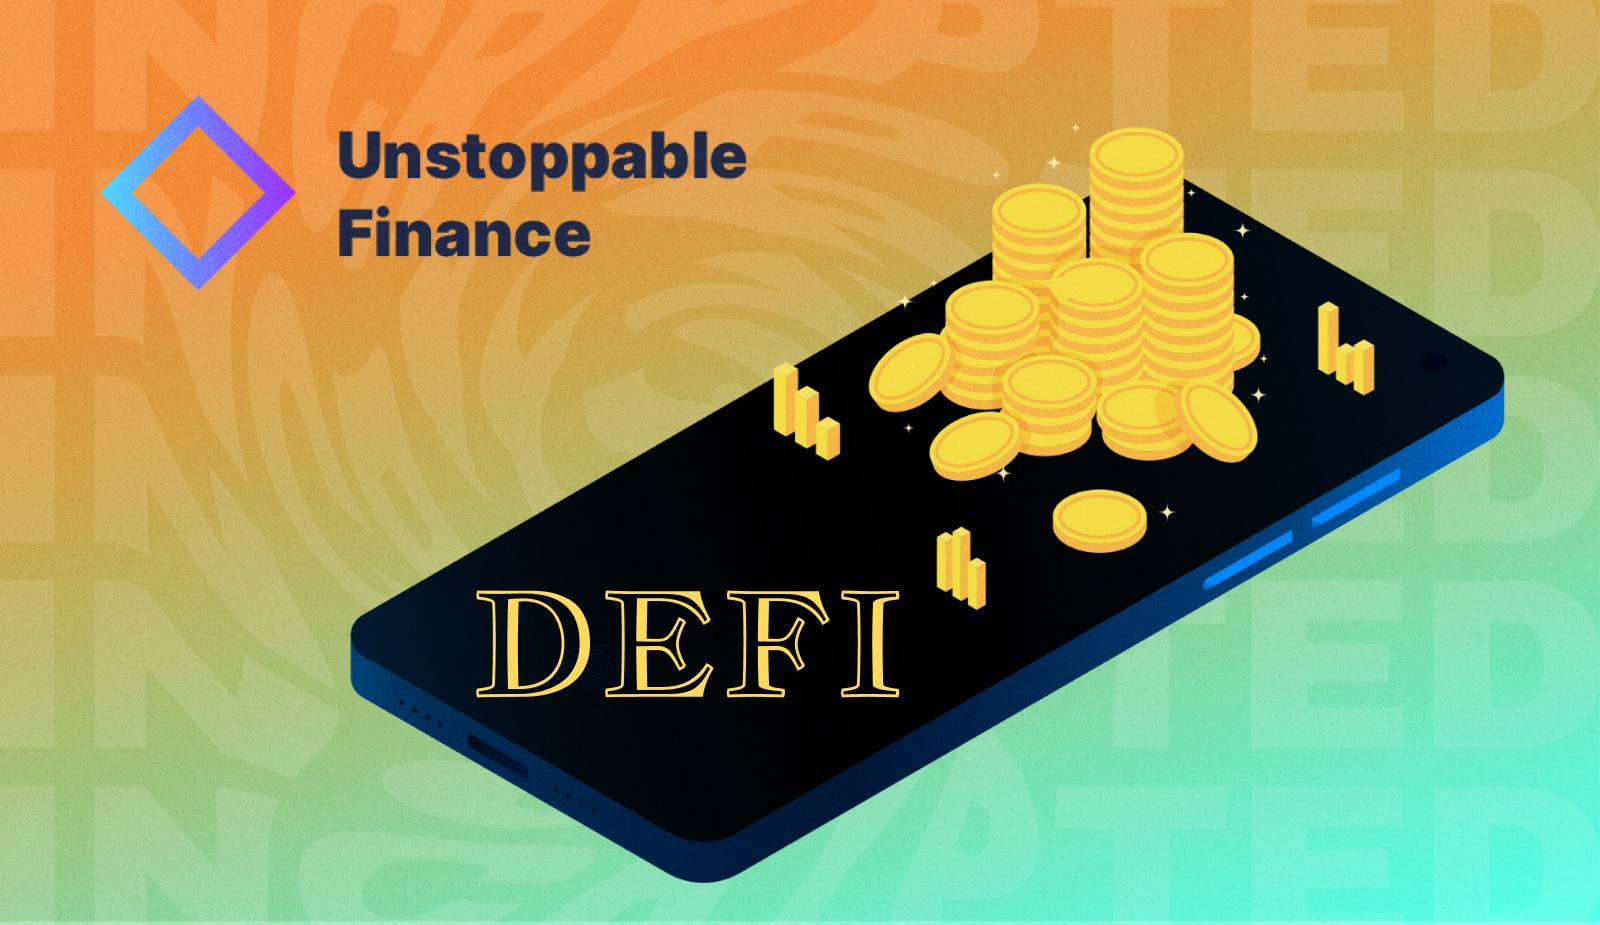 Unstoppable привлекла 12,8 млн долларов инвестиций для разработки DeFi-кошелька. Заглавный коллаж новости.